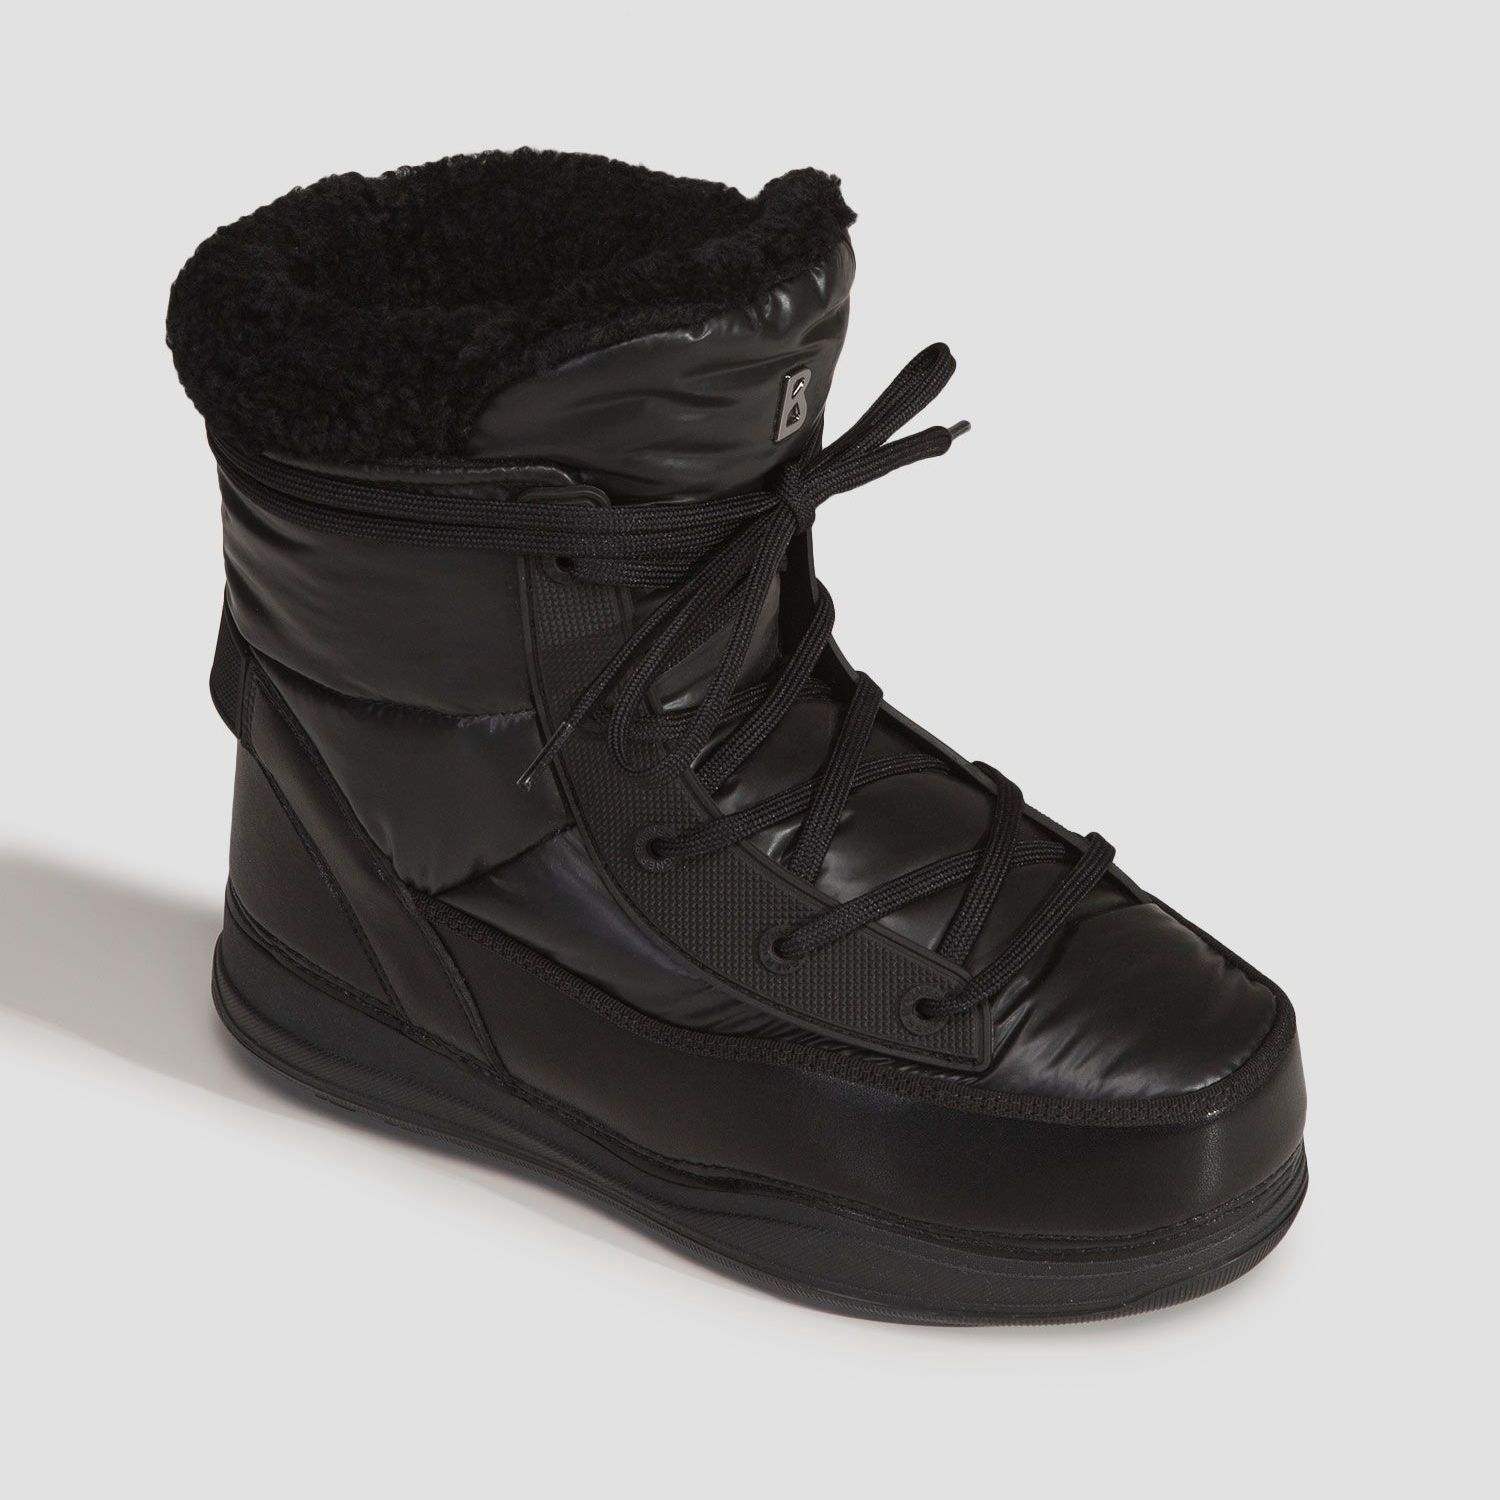 Incaltaminte De Iarna -  bogner La Plagne 2B Snow boots